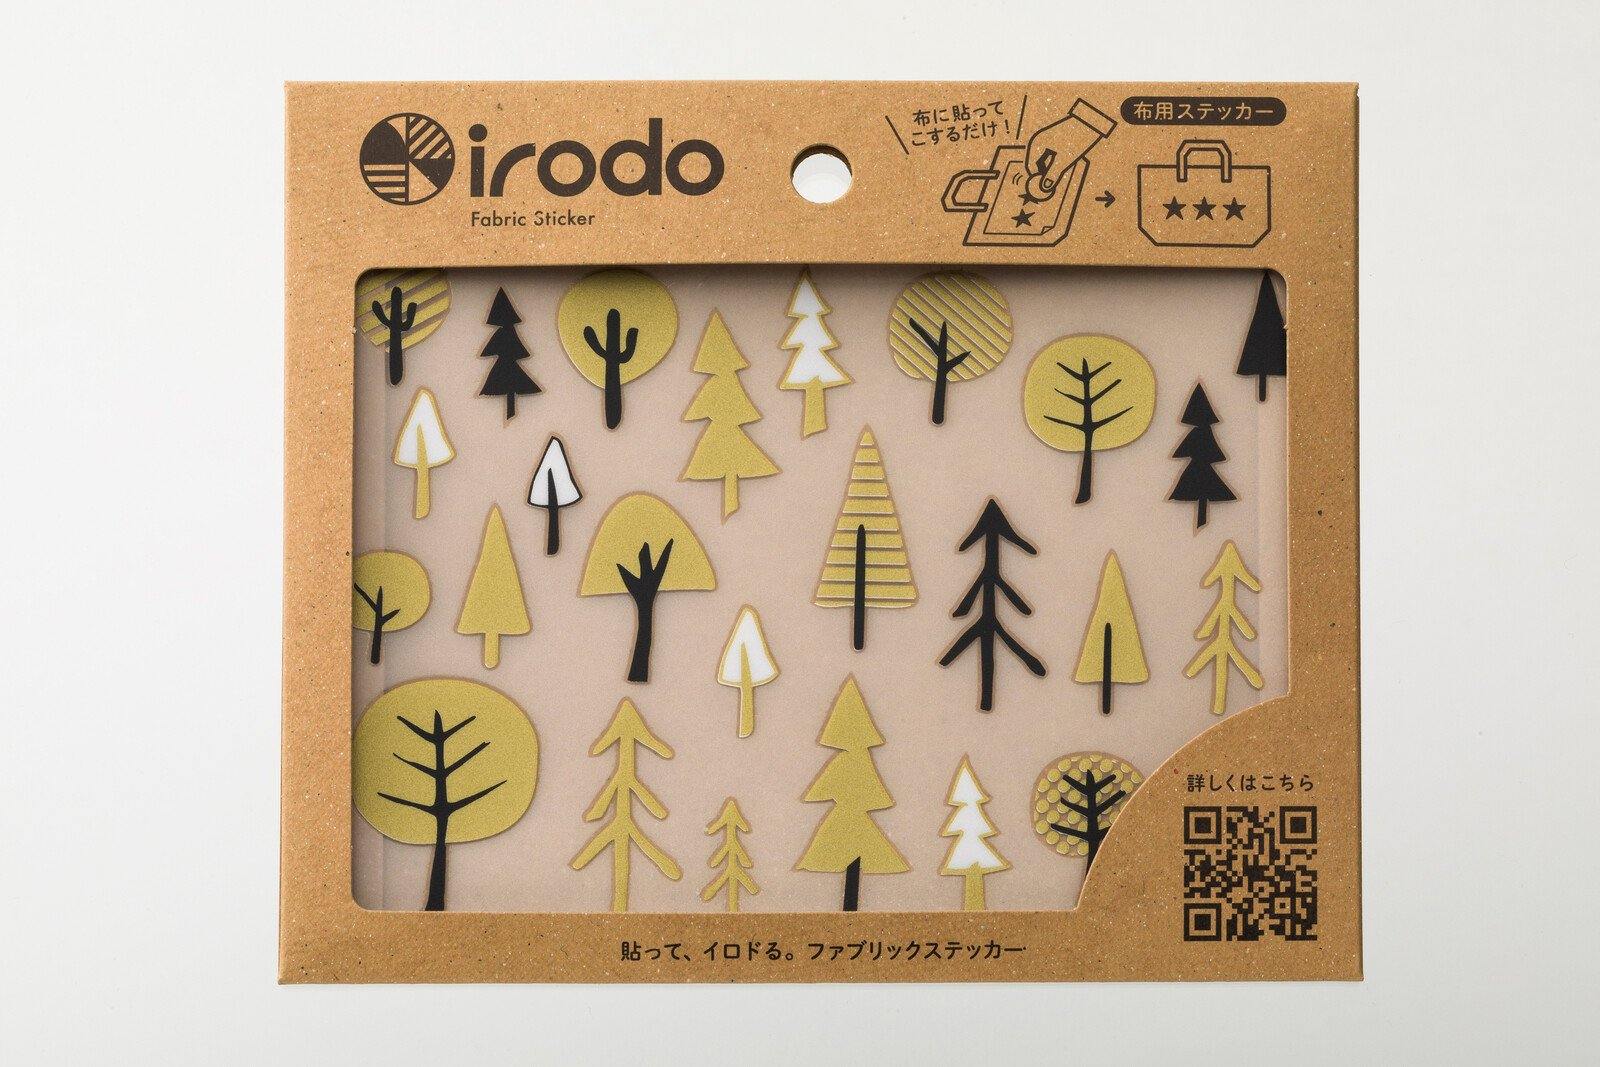 Irodo Fabric Decorating Transfer Sticker - Forest Gold & Black | papermindstationery.com